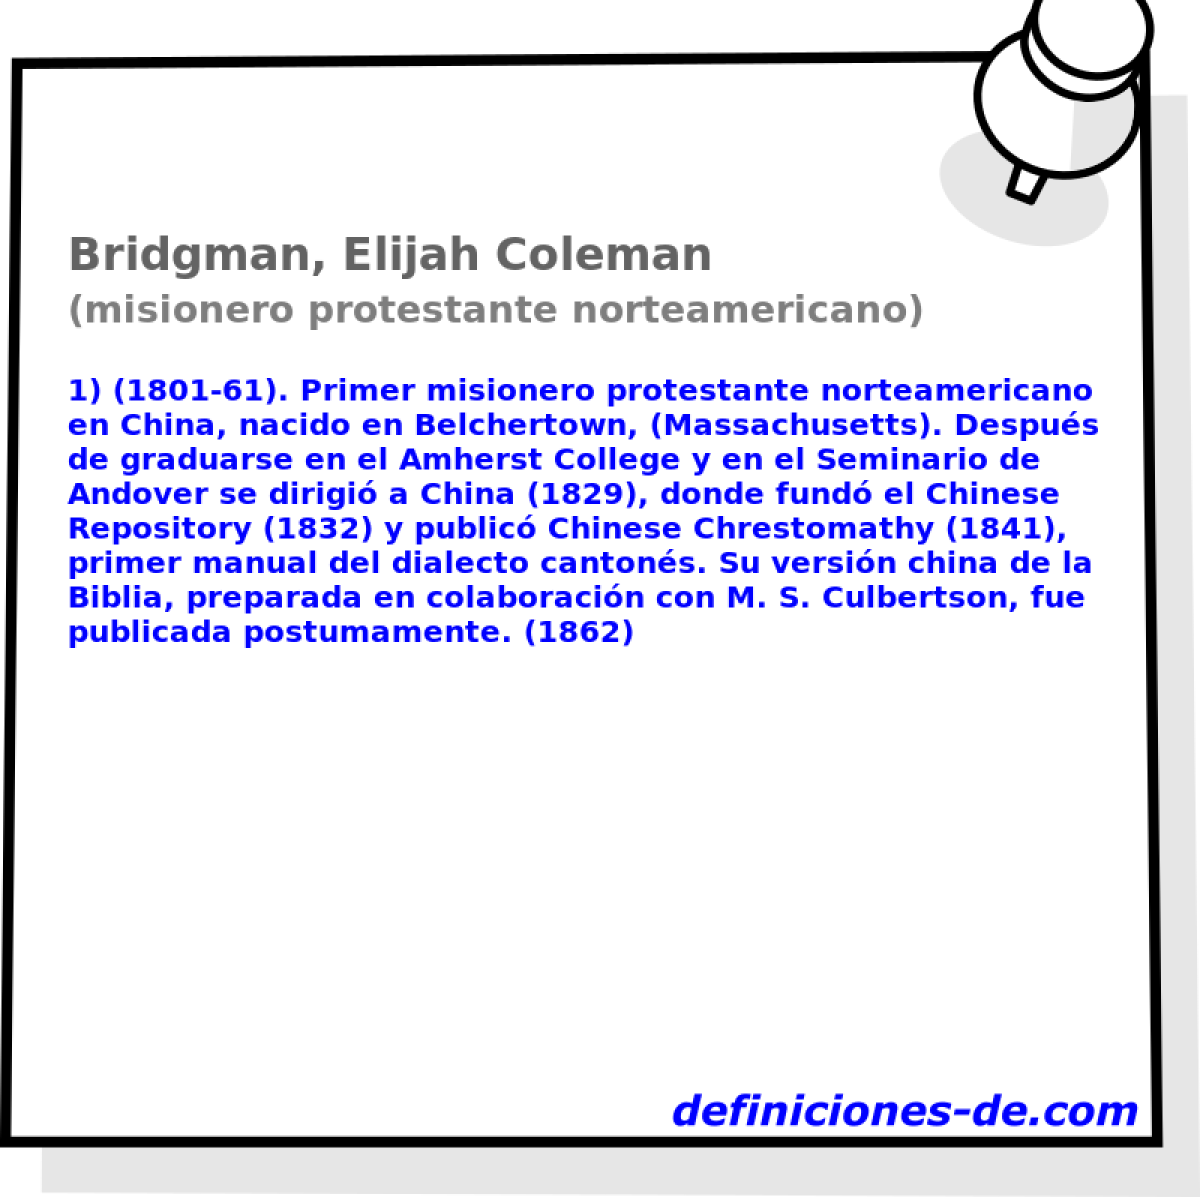 Bridgman, Elijah Coleman (misionero protestante norteamericano)